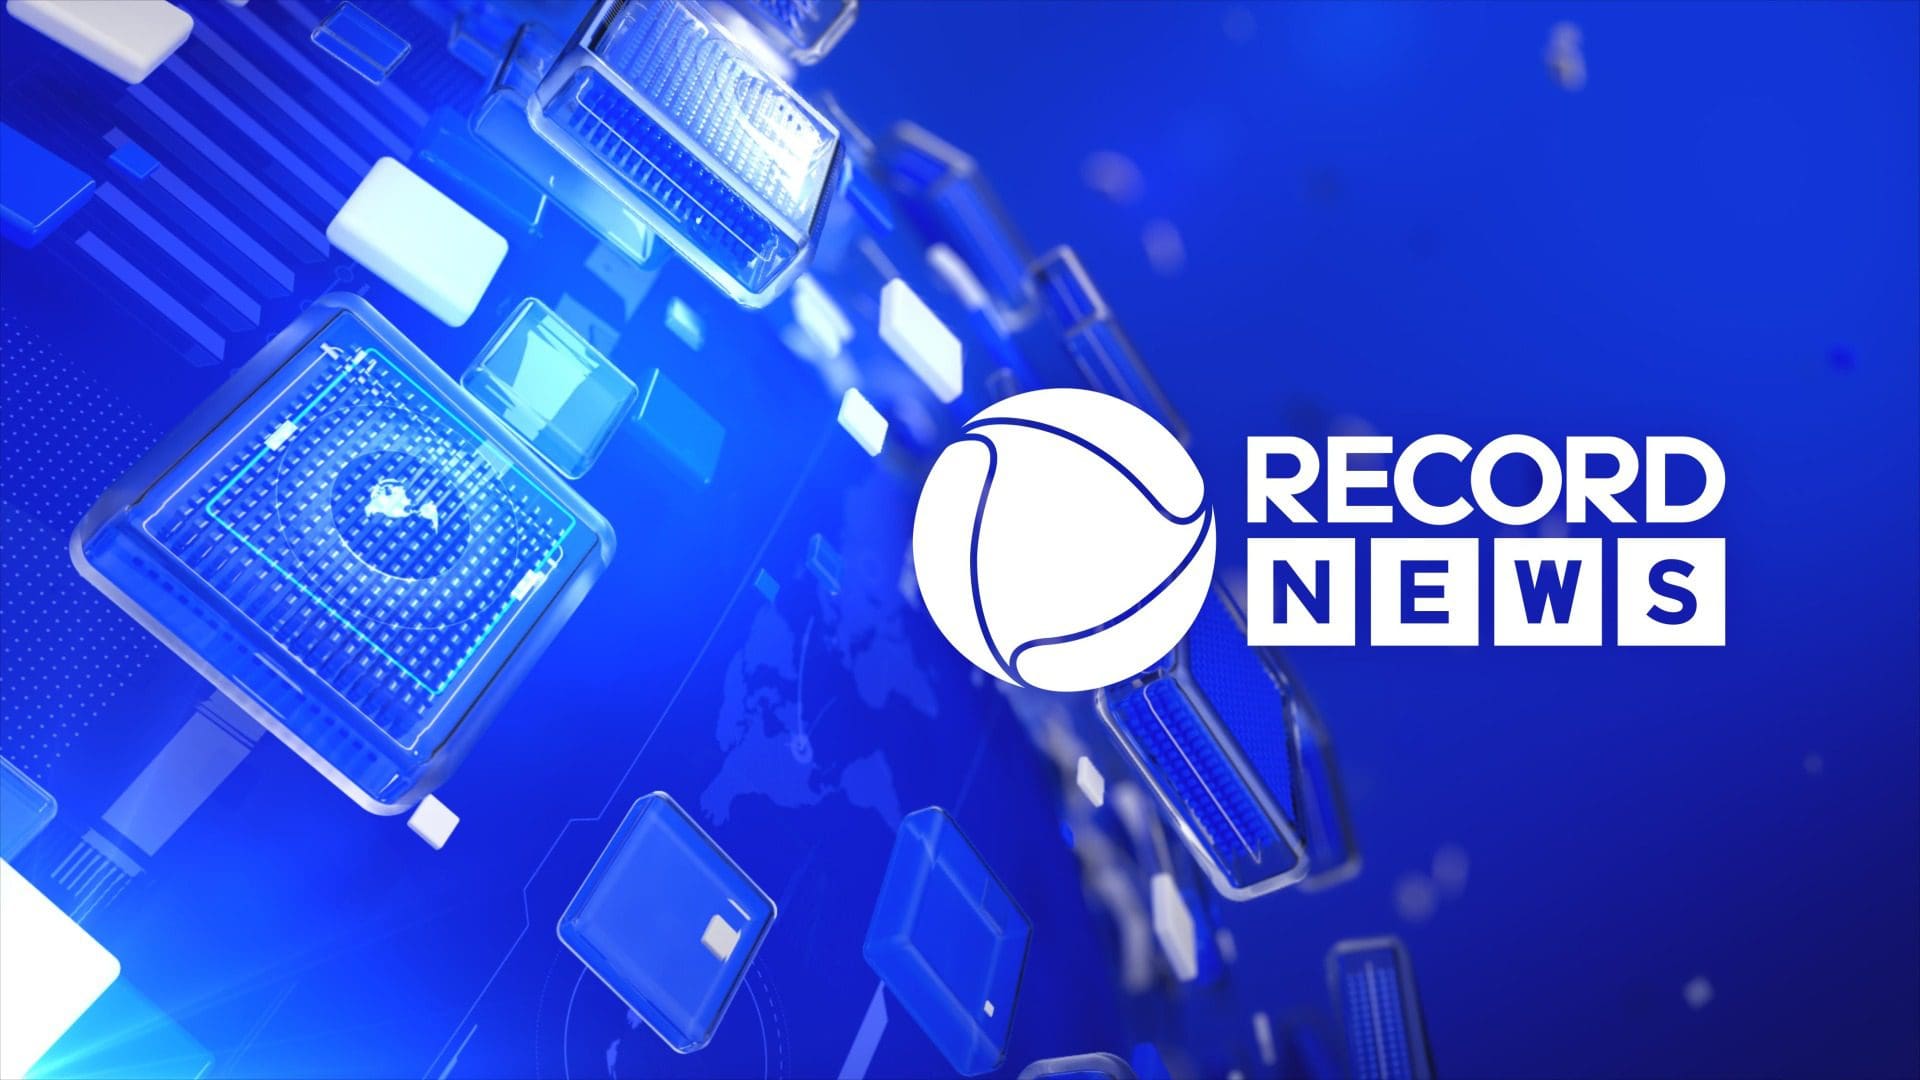 Record News celebra 15 anos de informação e chega ao público com imagem renovada